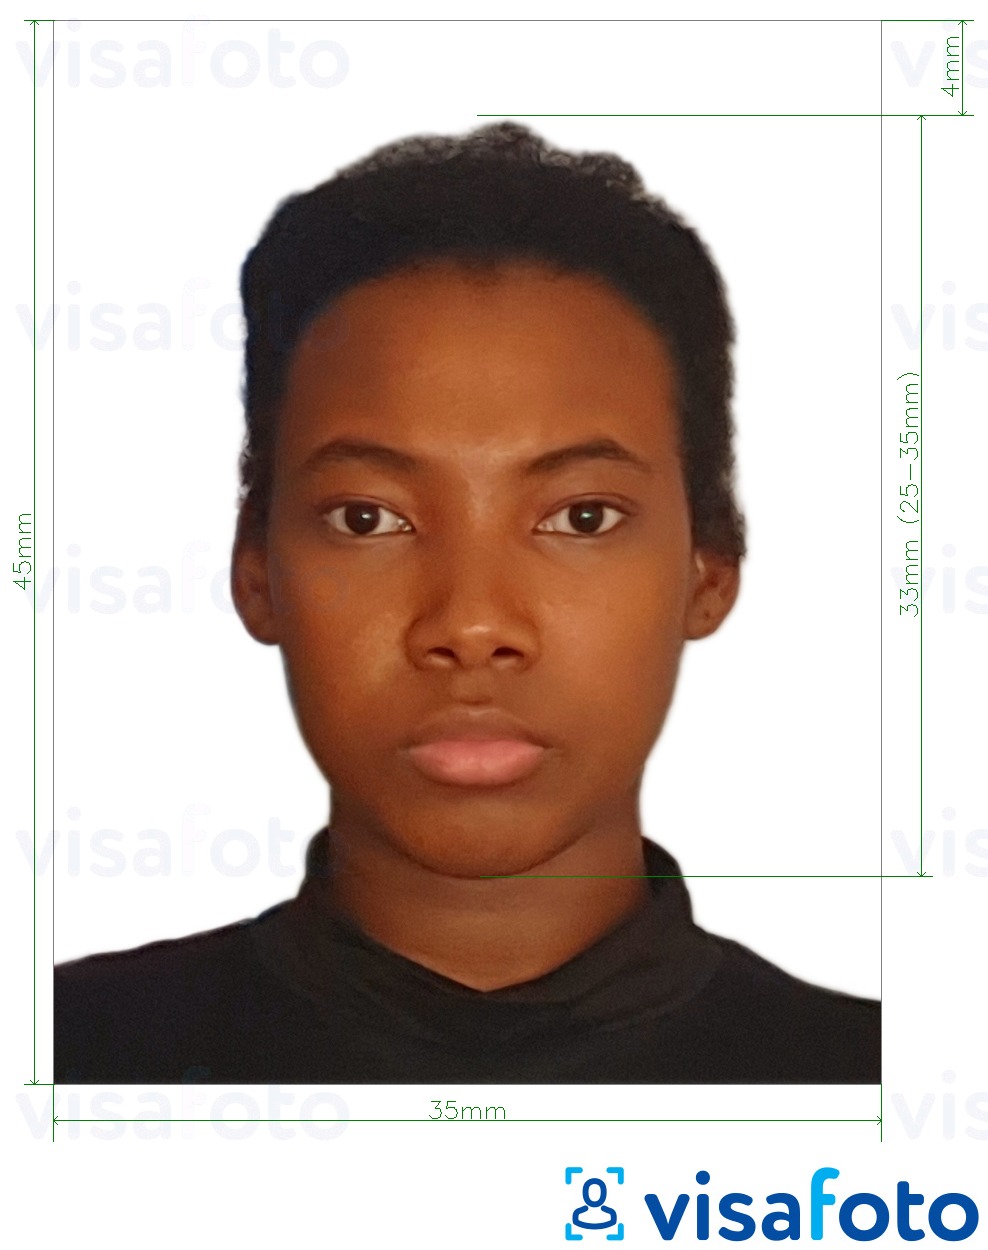 Příklad fotografie Jamaica pas 35x45 mm (3,5x4,5 cm) s přesnou specifikací velikosti